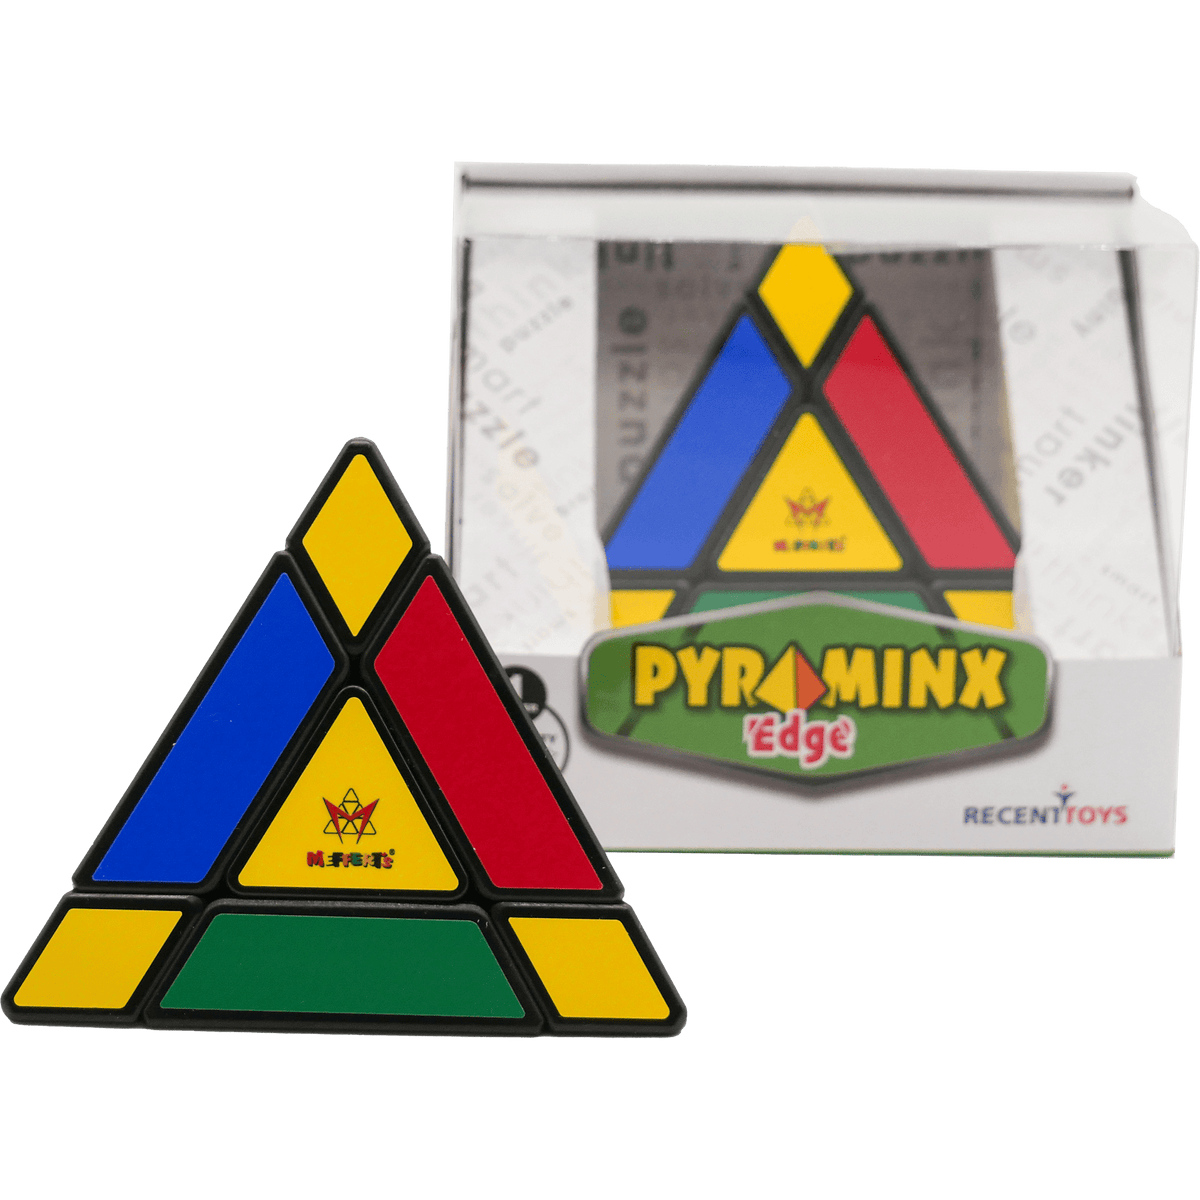 Puzzle Pyramid: Pyraminx